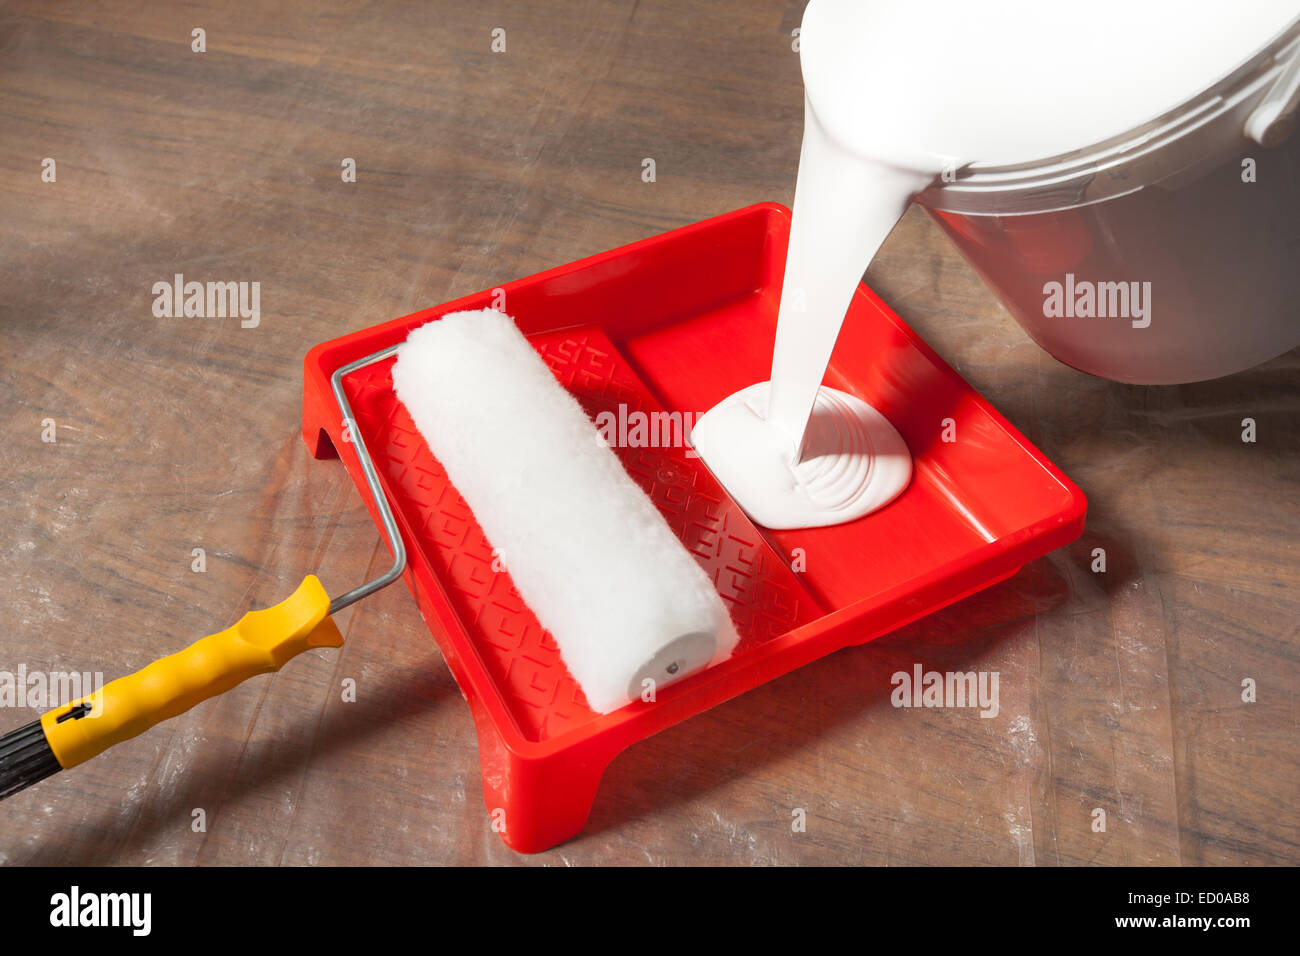 La preparazione per la verniciatura, versando la vernice in un vassoio. Foto Stock